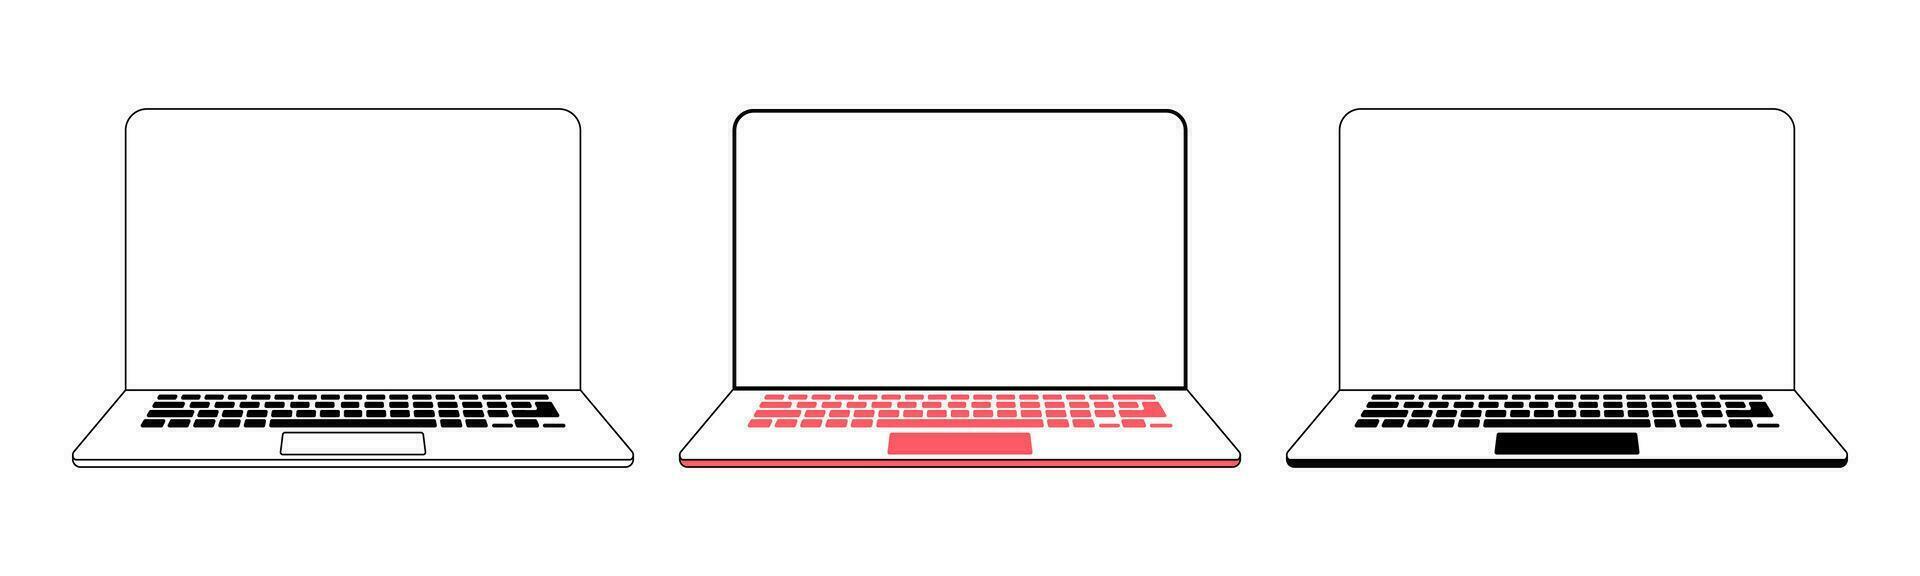 computador portátil plano vetor ilustração. computador computador portátil esboço com em branco tela